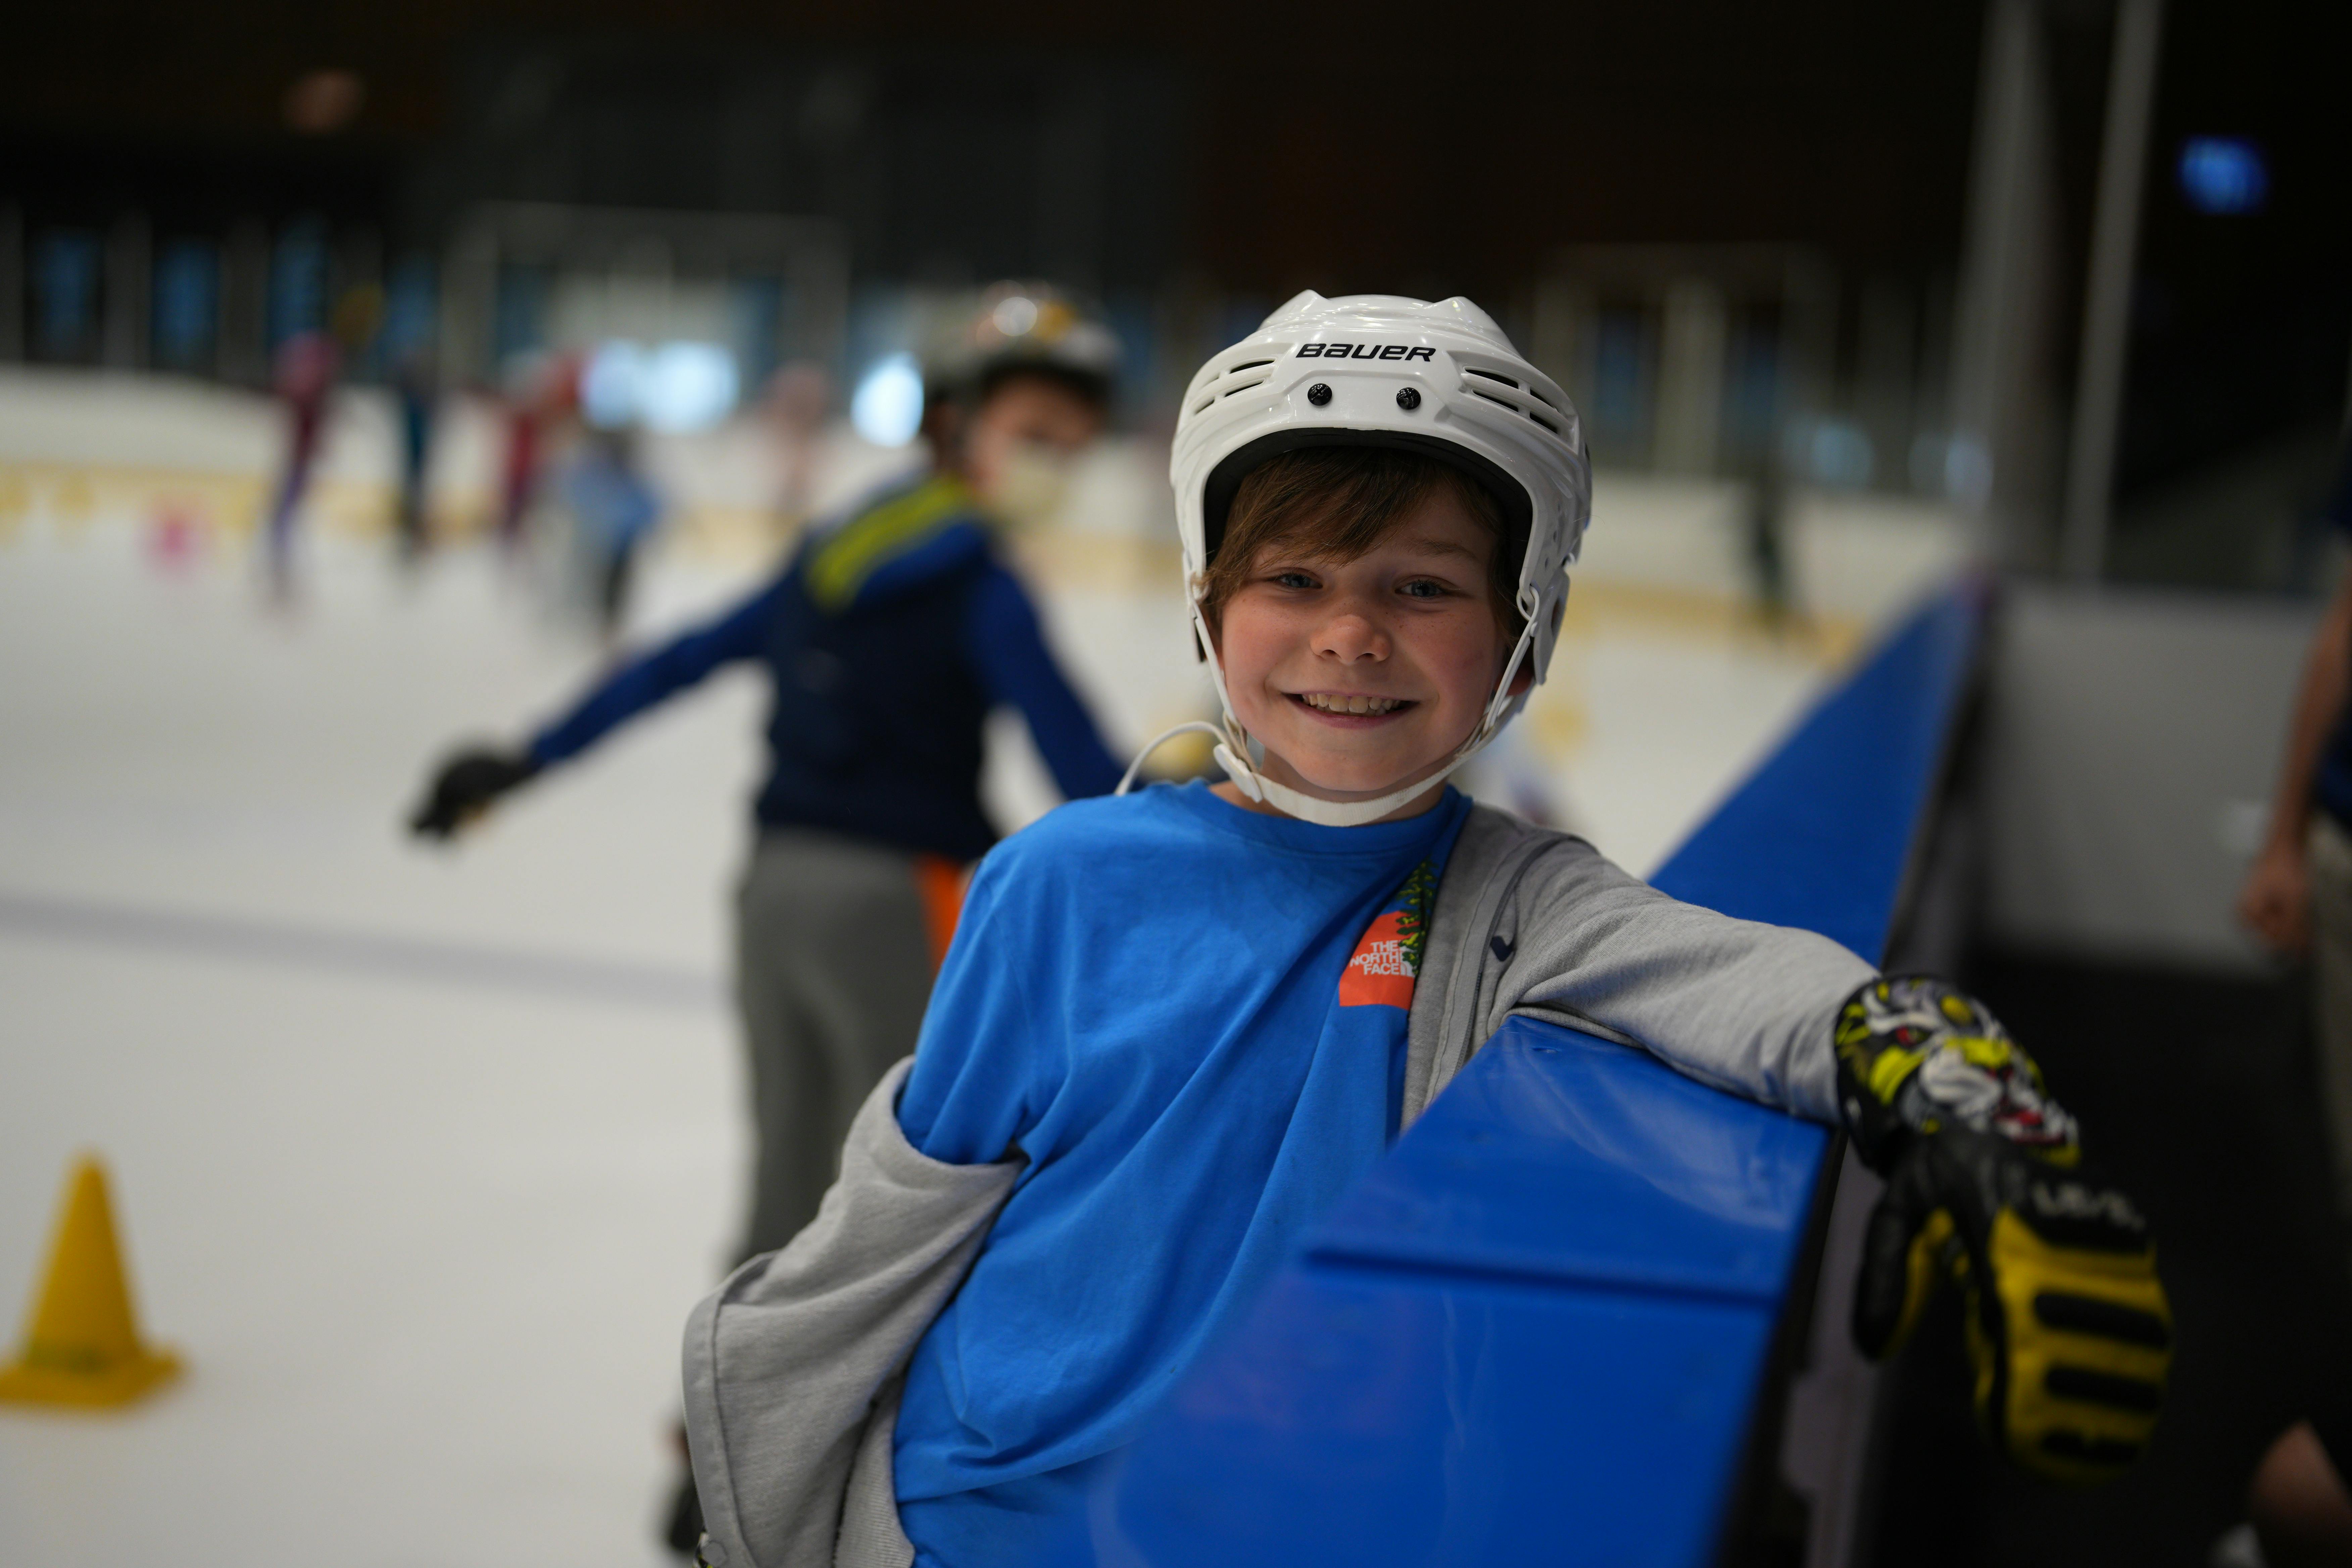 Apprendre le patin à glace à ses enfants